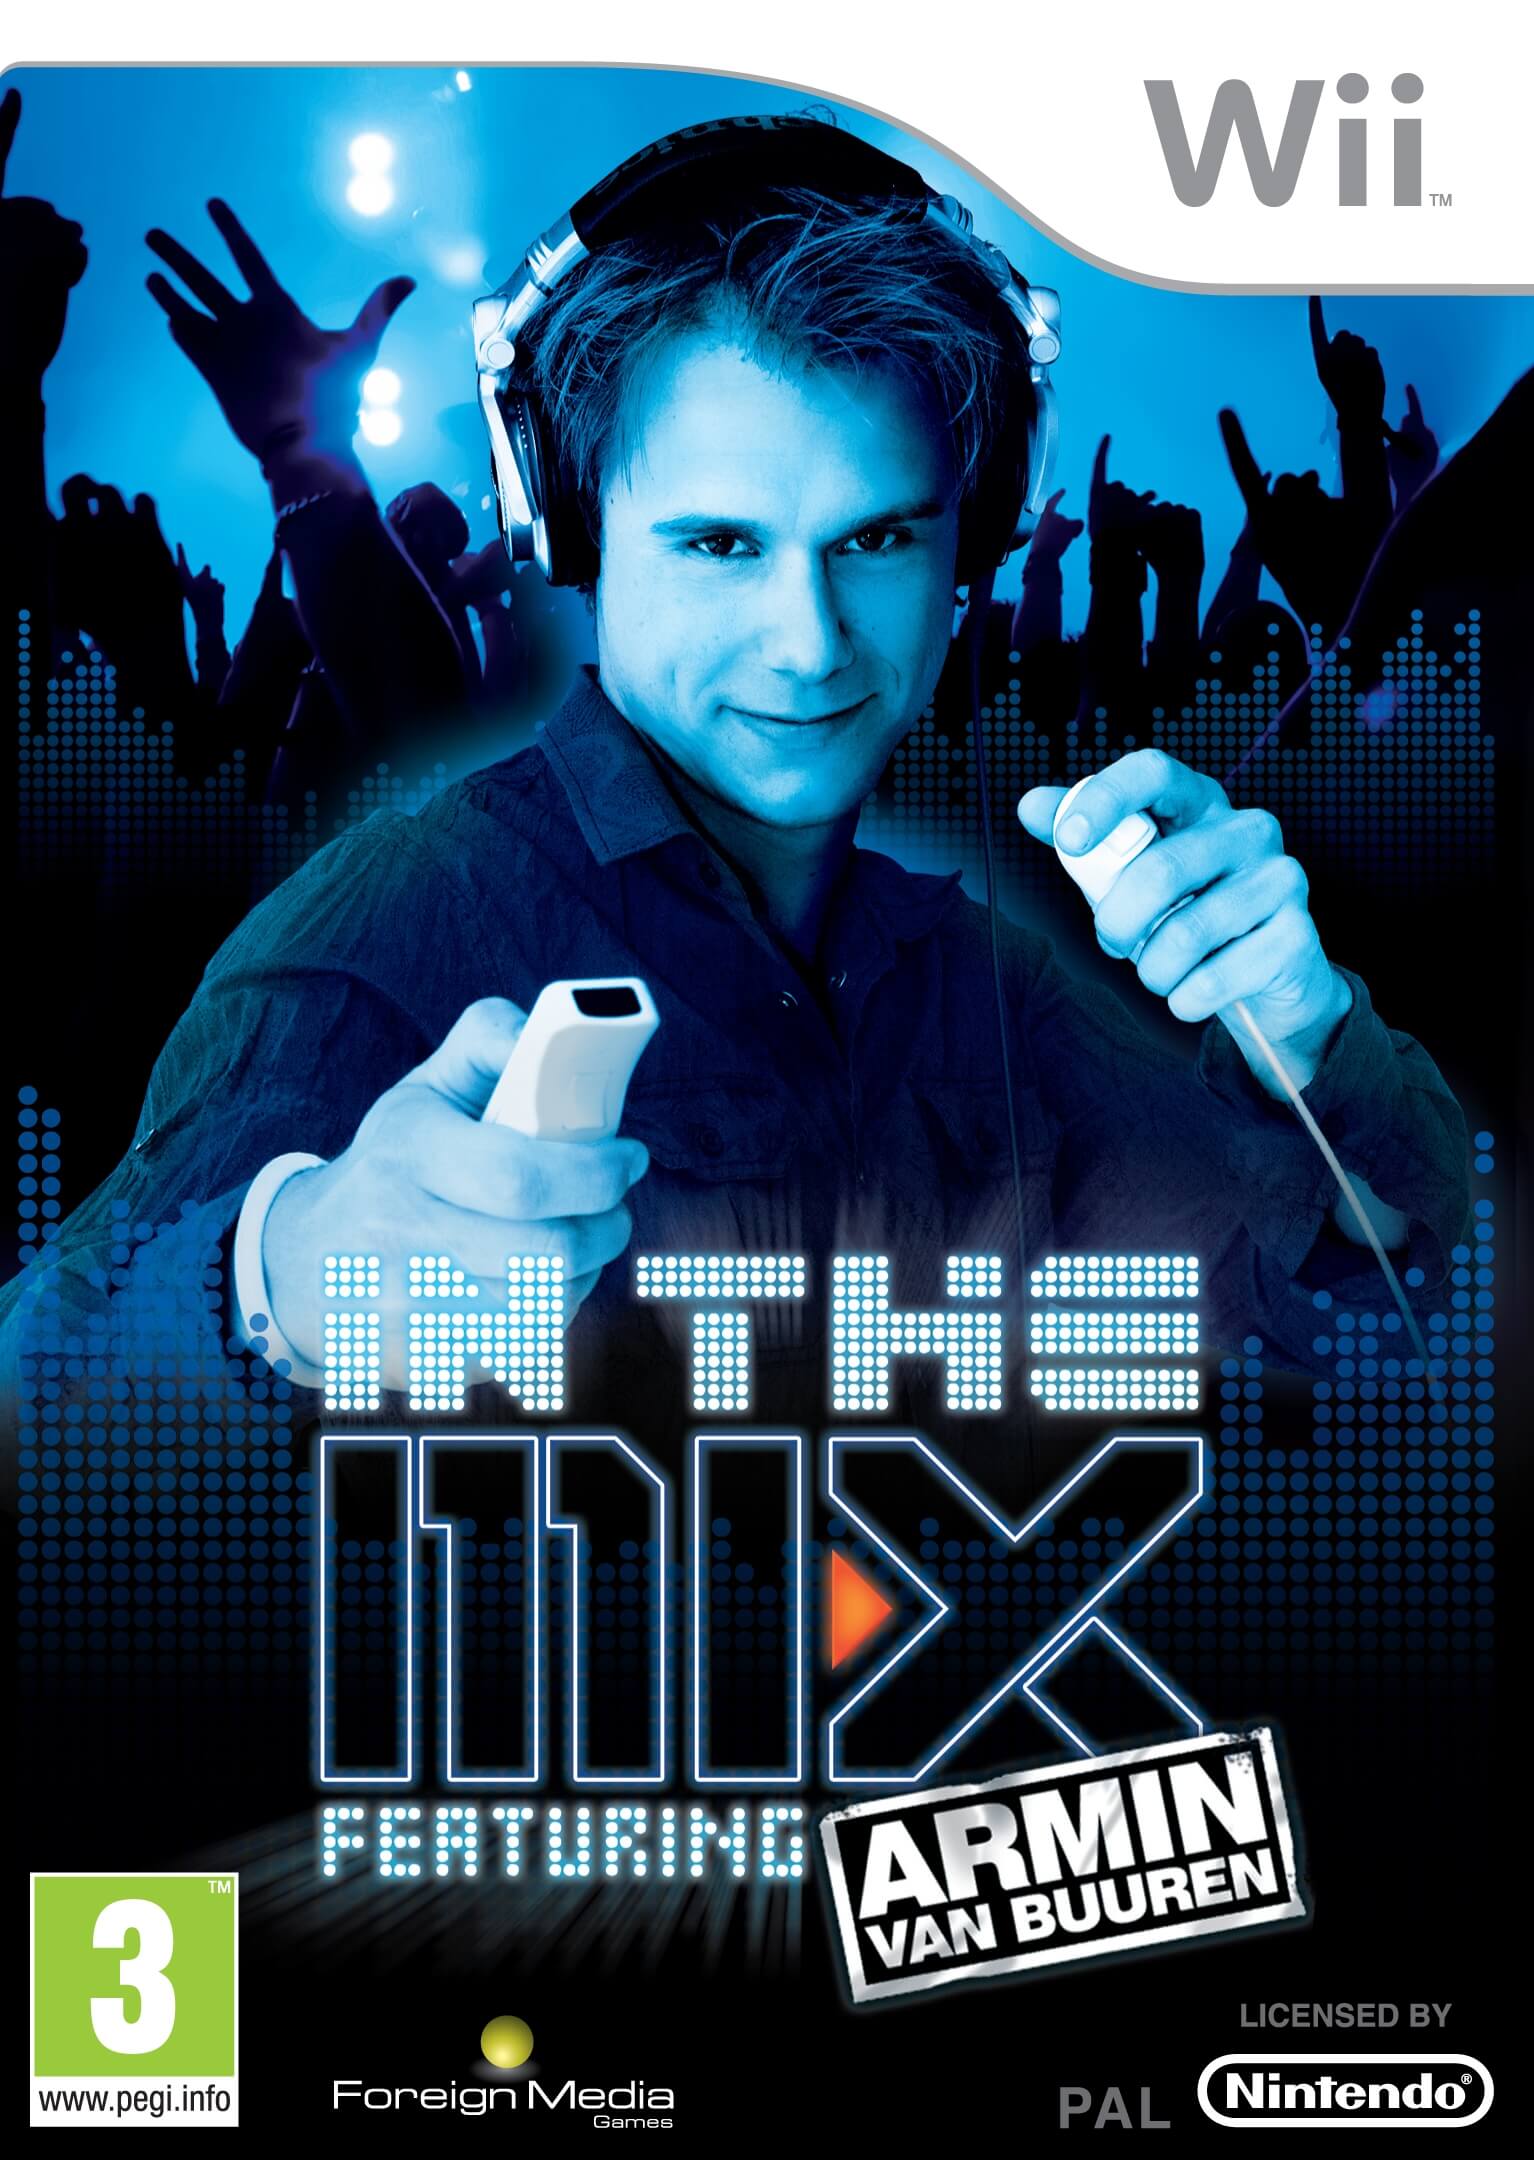 In The Mix featuring Armin van Buuren